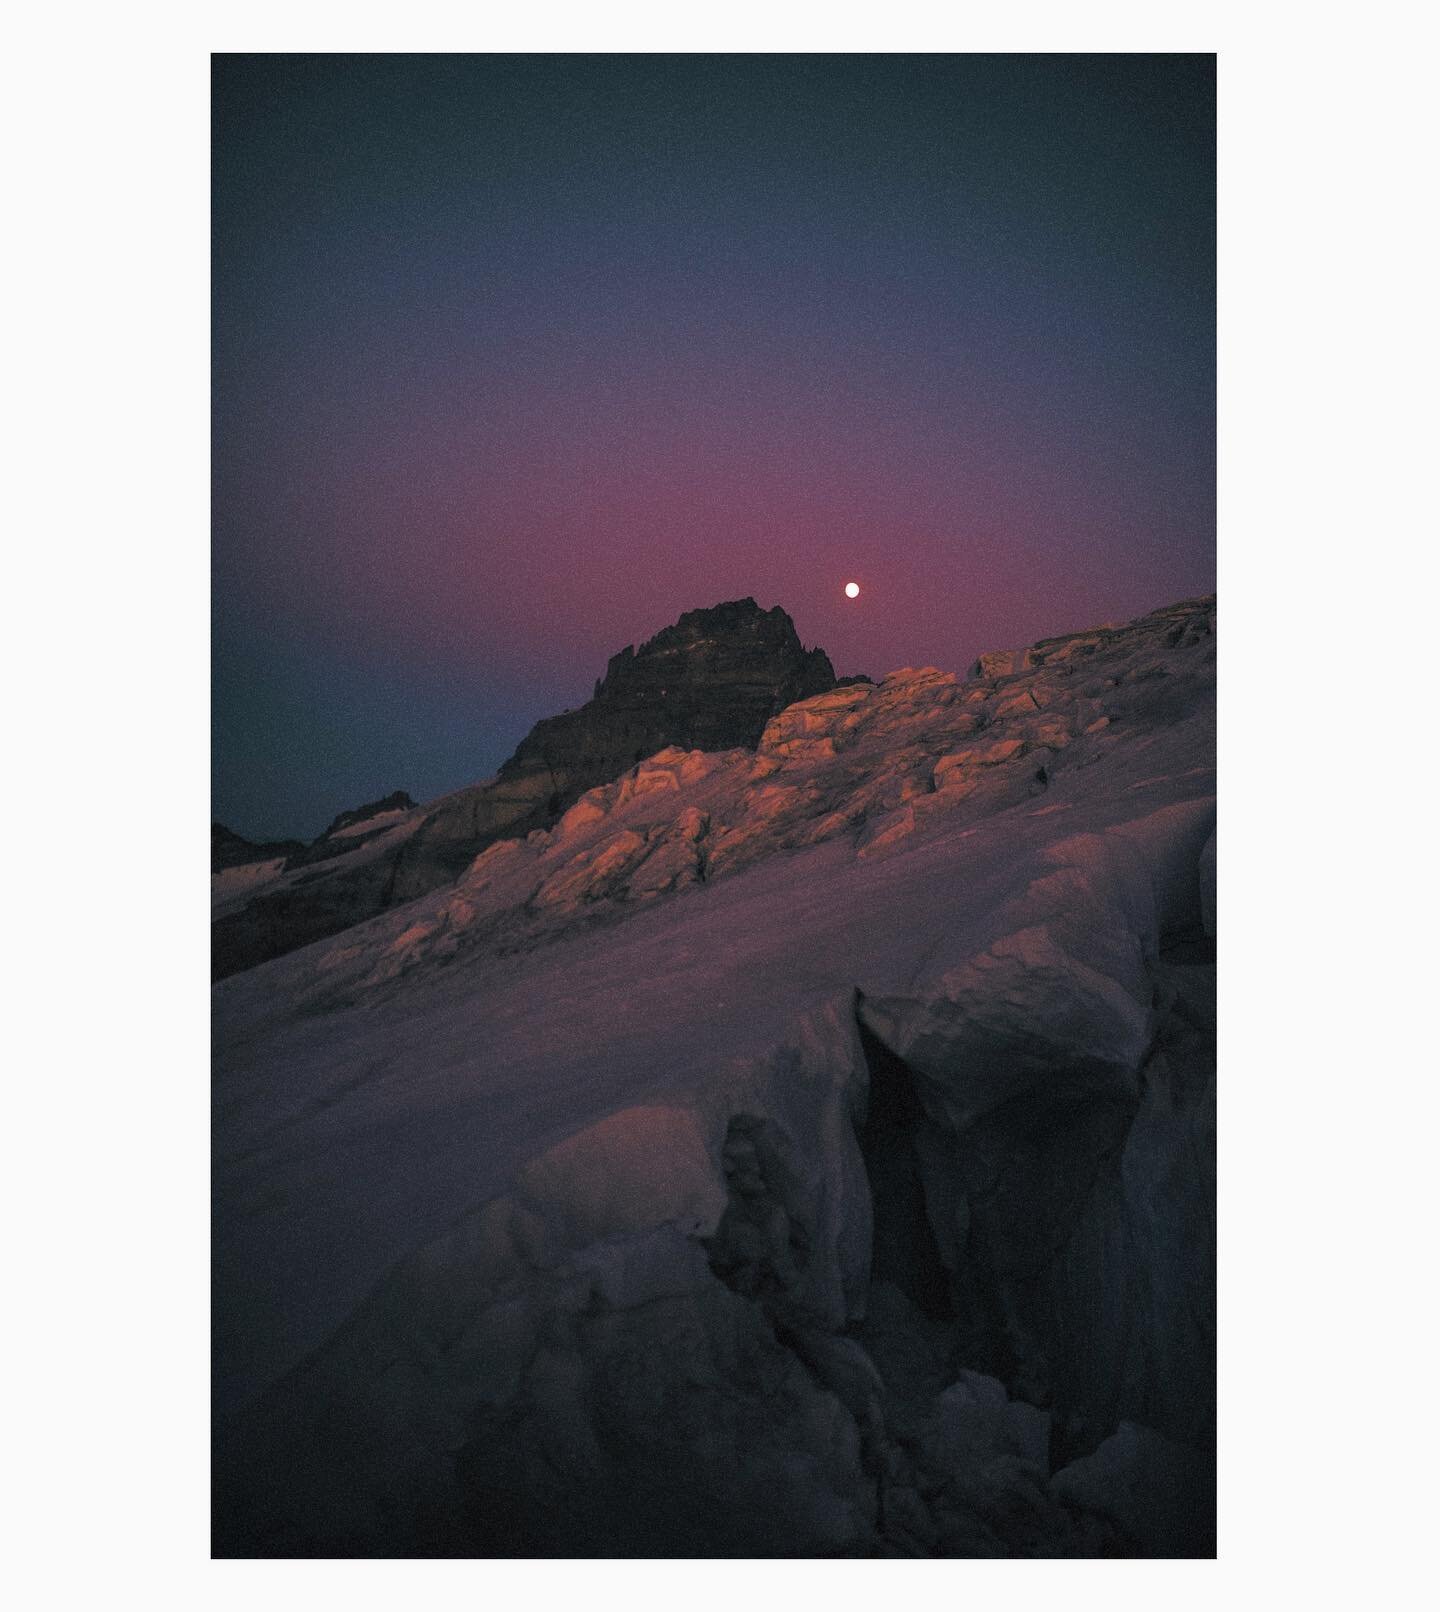 Emmons Glacier at dusk